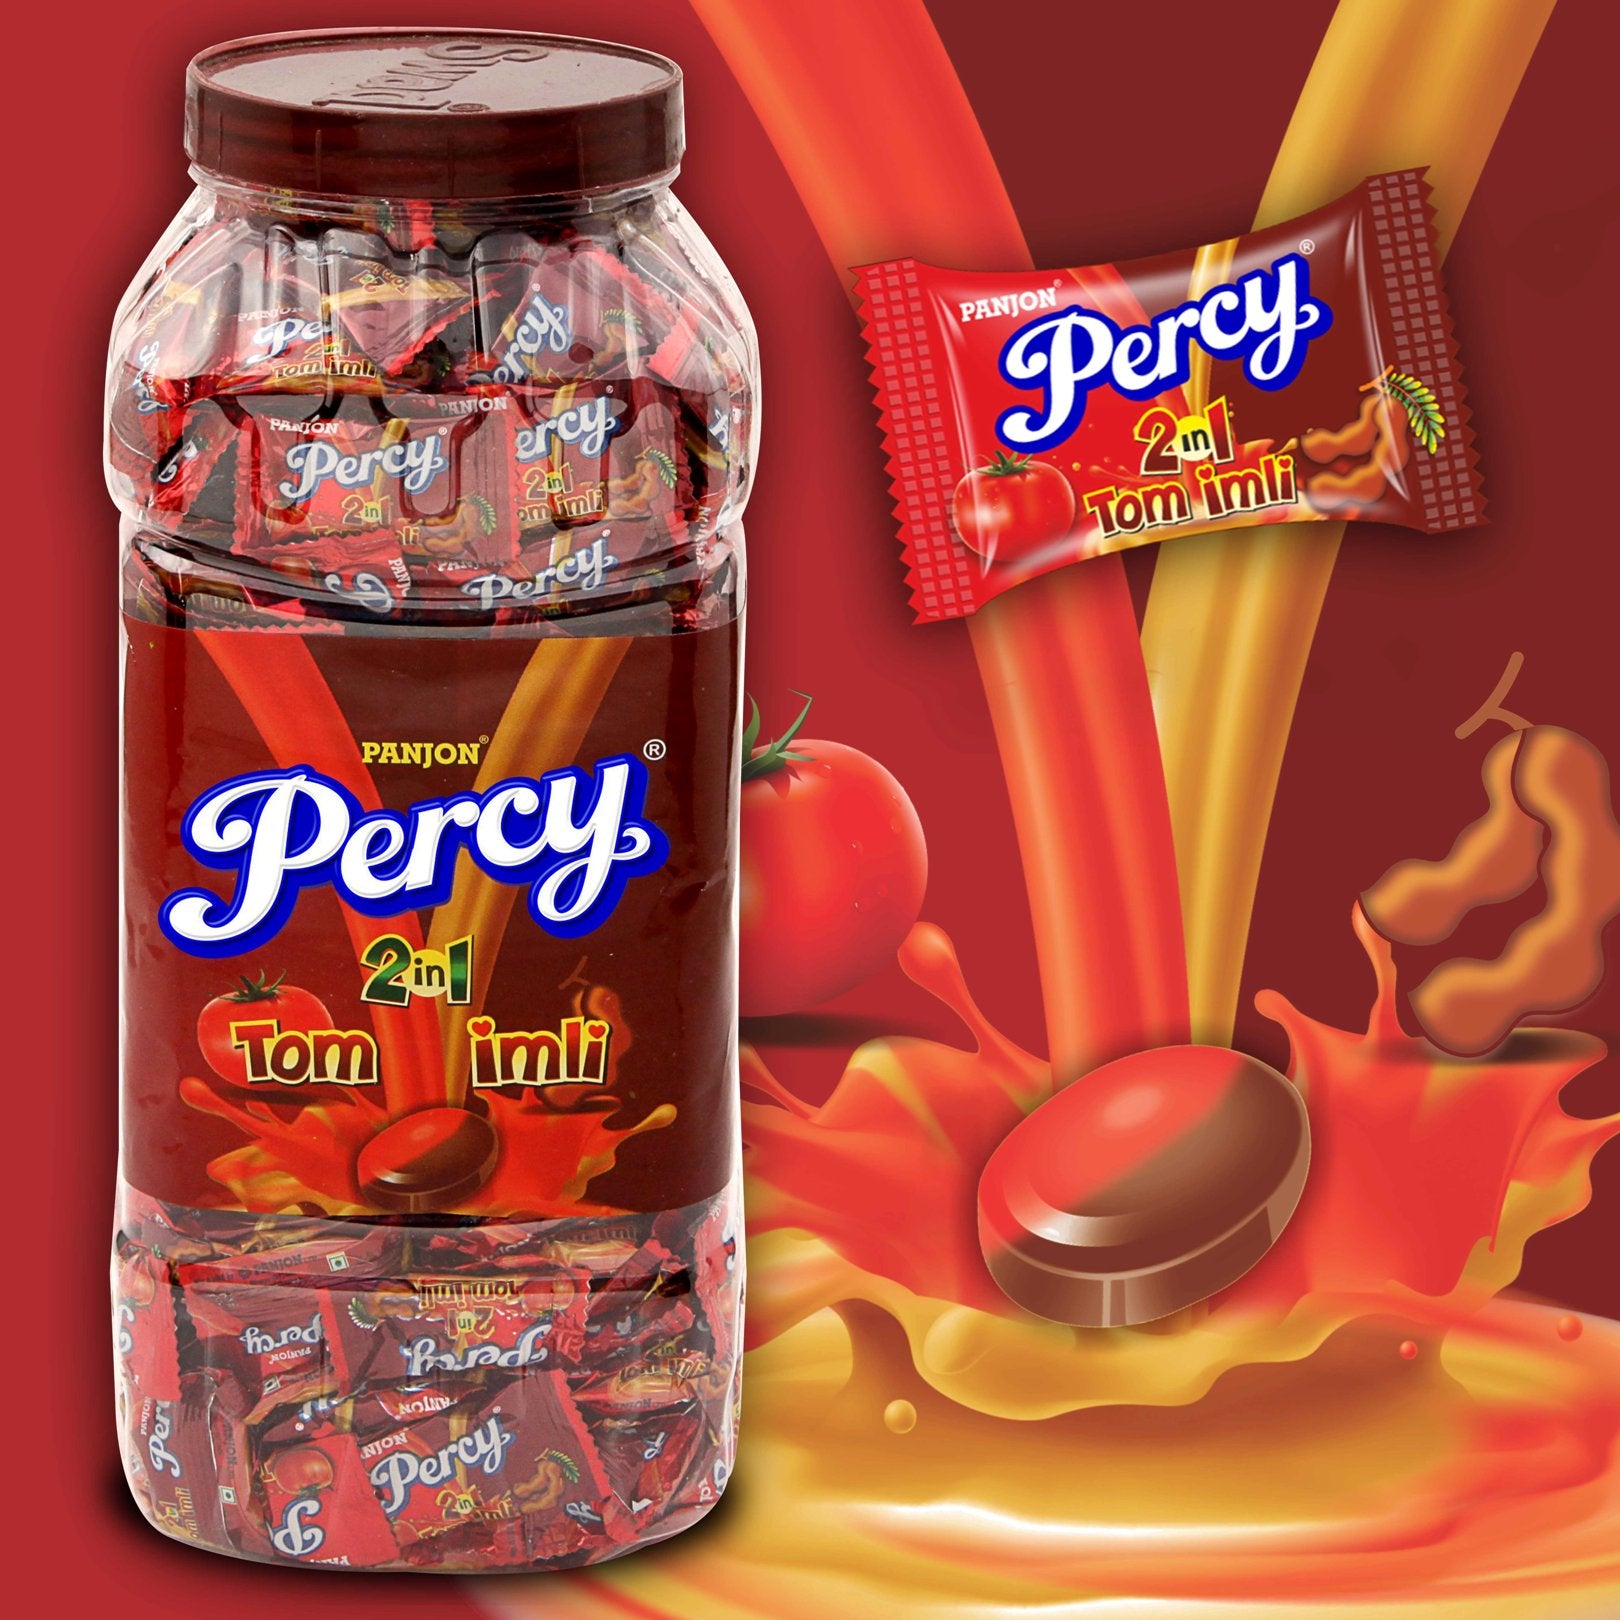 Percy 2 in 1 Tom Imli Candy Toffee Jar, 875g